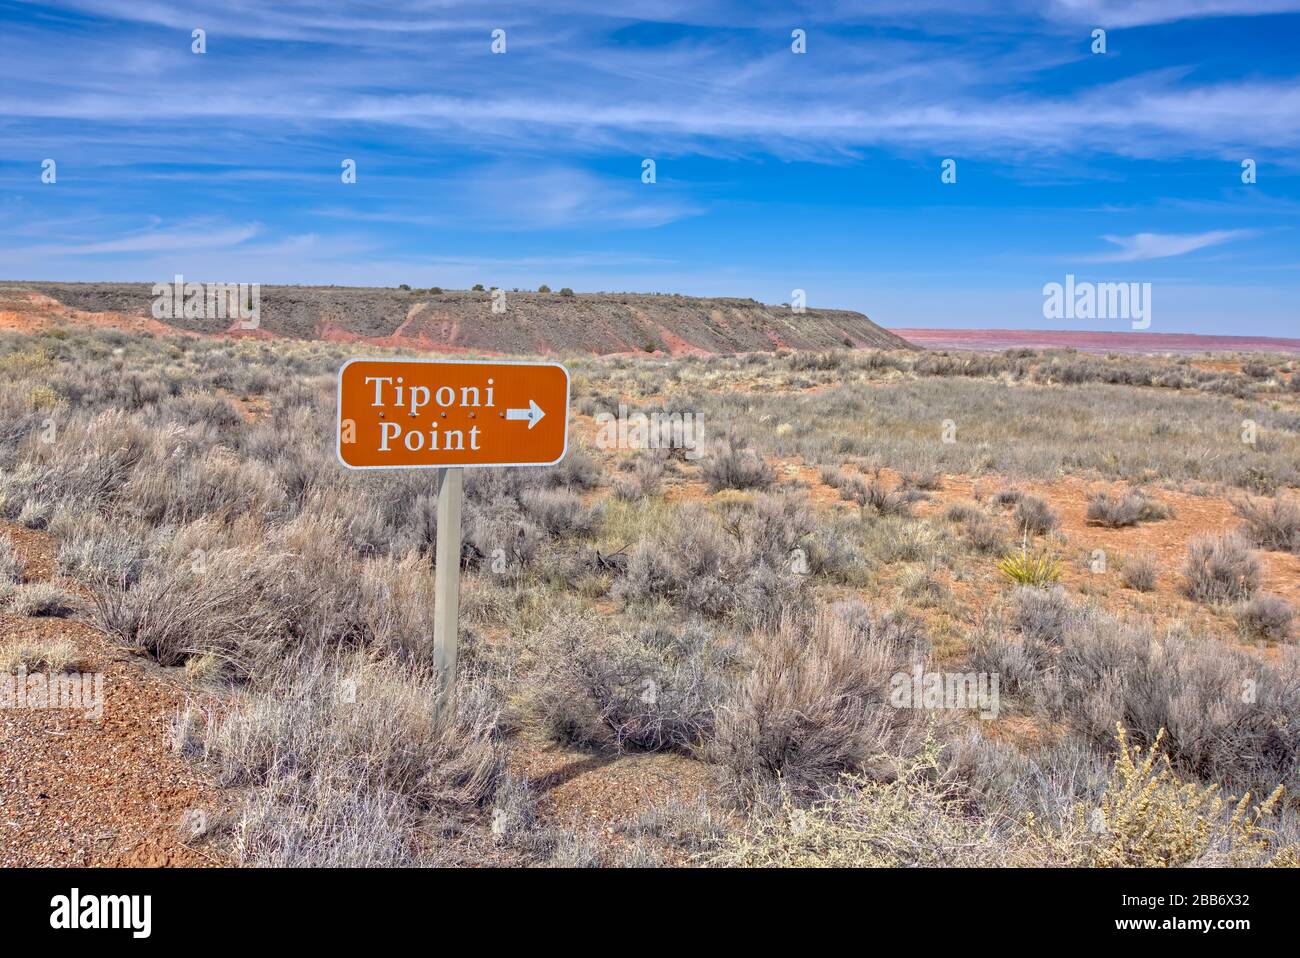 Señal que indica Tiponi Point, Parque Nacional del Bosque Petrificado, Arizona, Estados Unidos Foto de stock